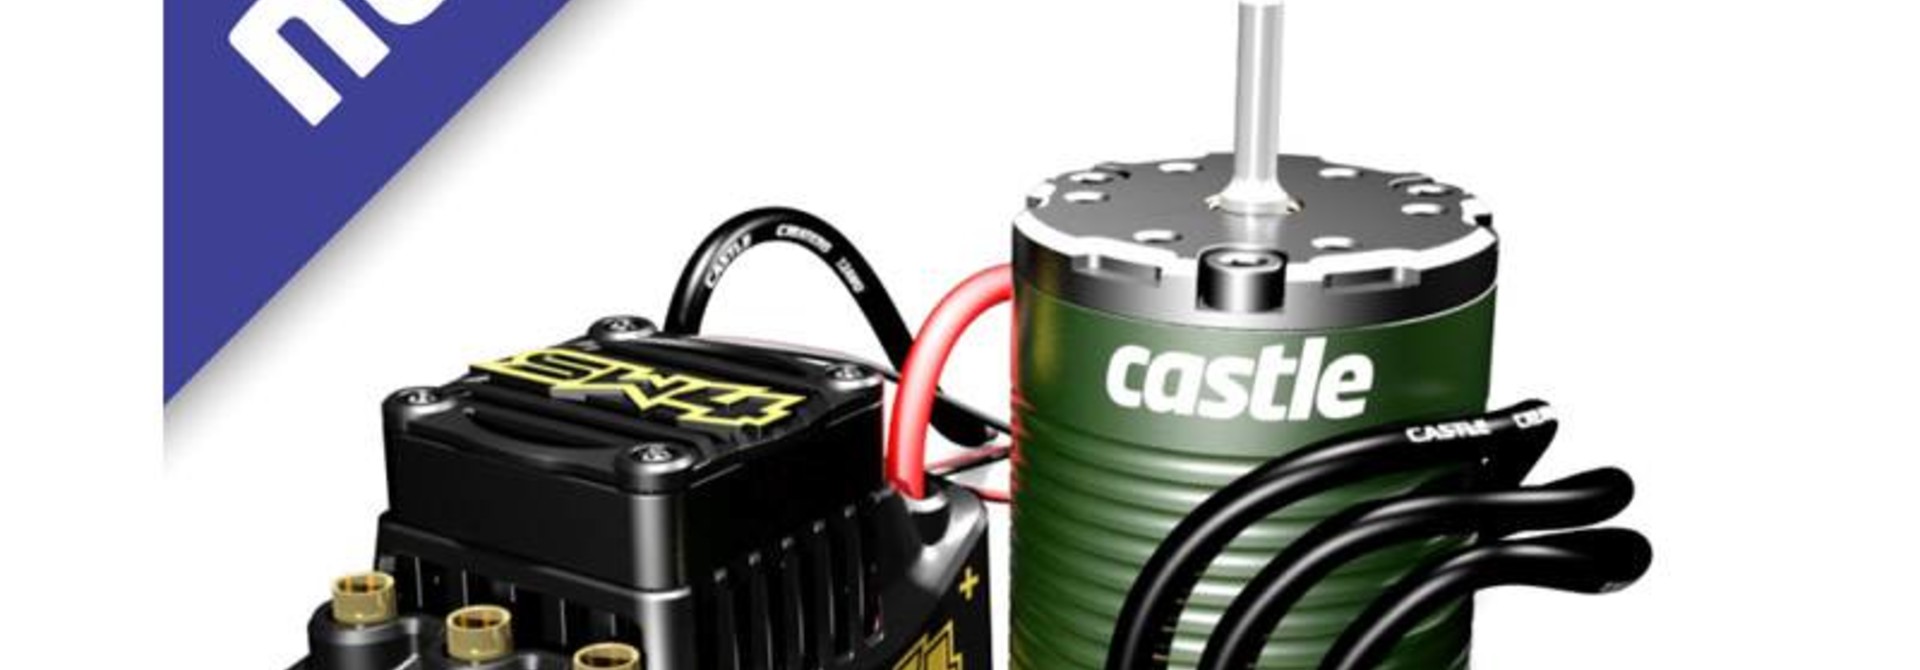 Castle - Sidewinder SW4, 12.6V, 2A BEC, WP Sensorless ESC W/1406-5700 Sensored motor